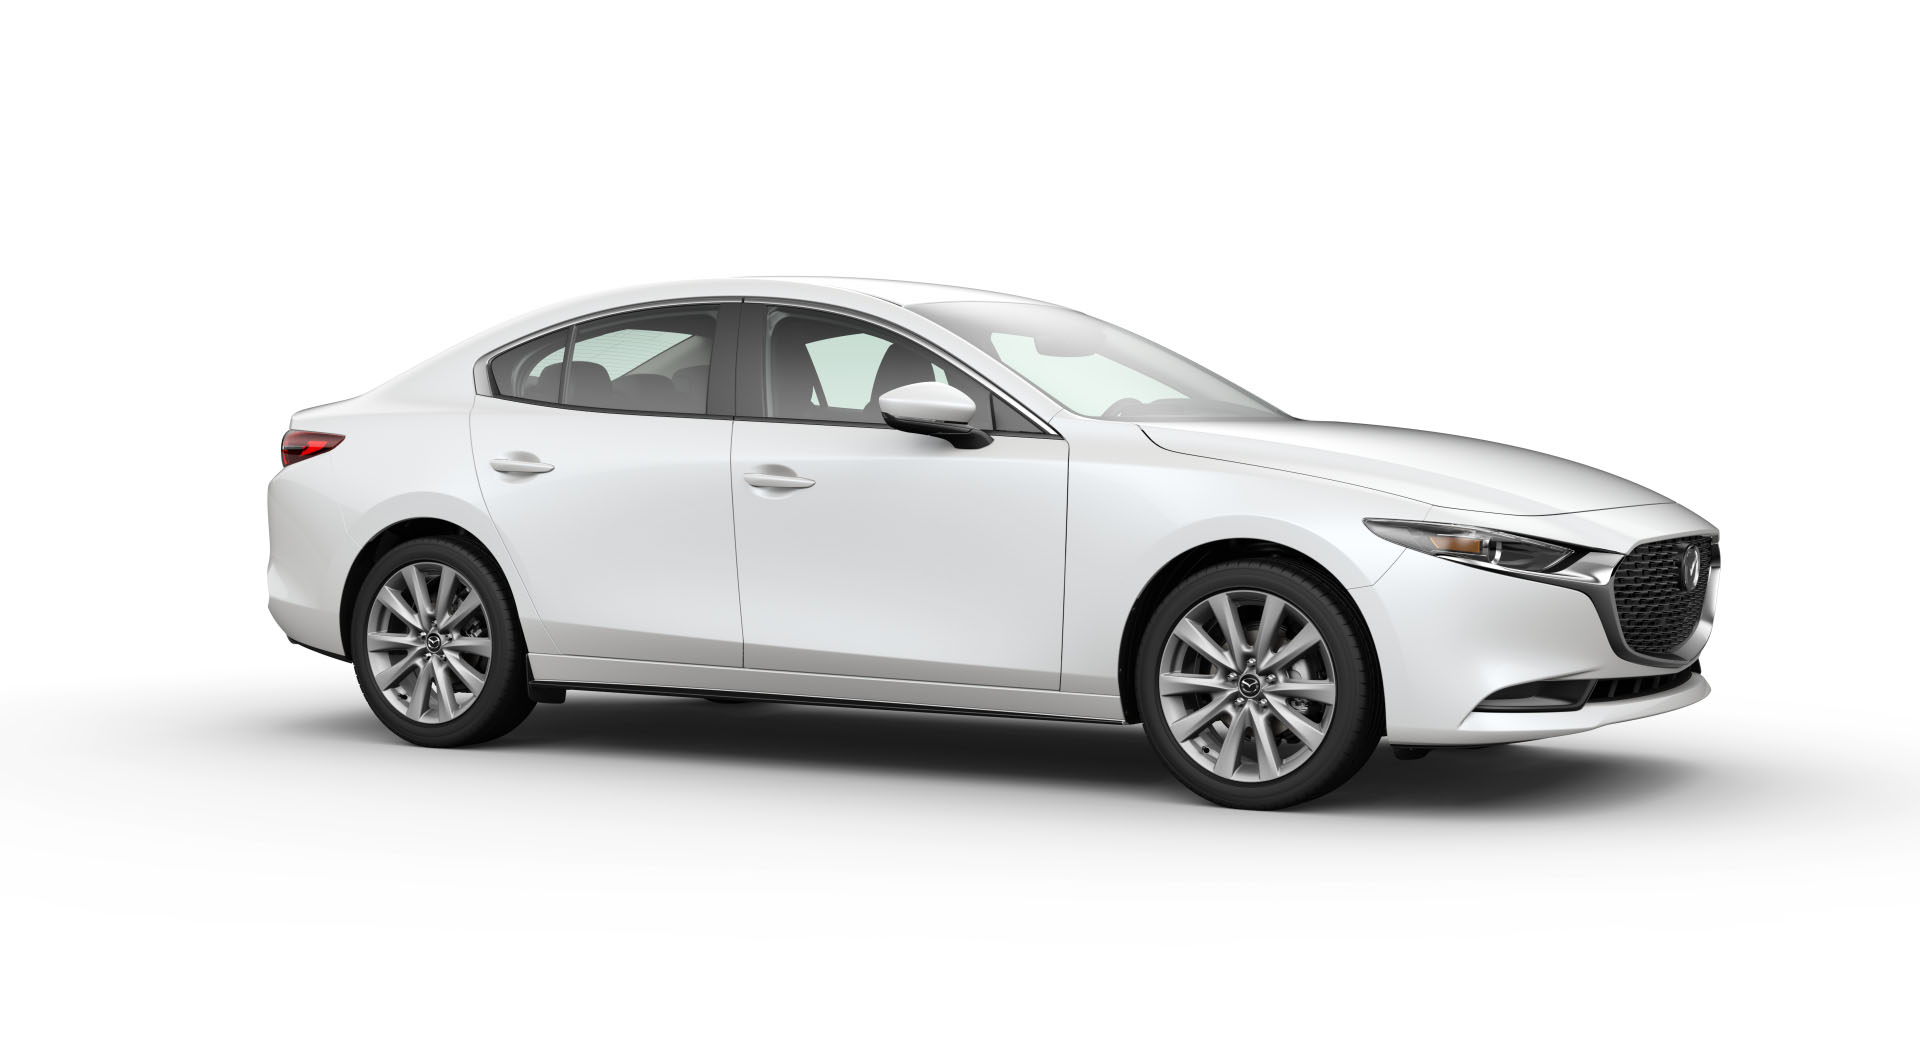 Mazda 3 màu trắng đăng ký 2020 chạy 1 vạn 2 giá bán ngạc nhiên